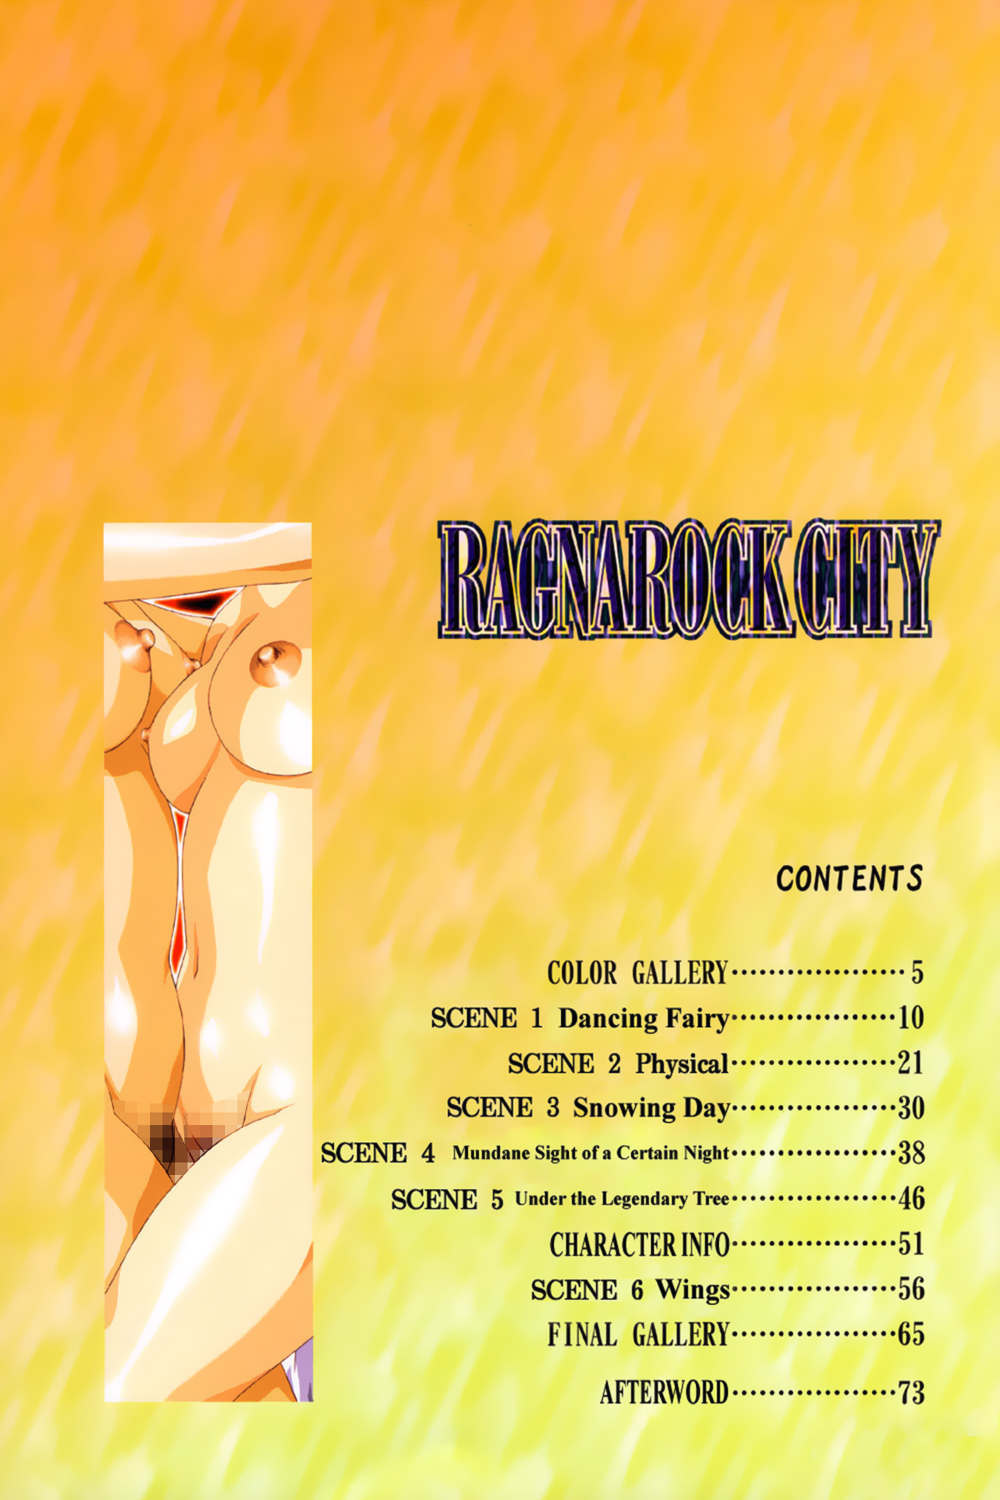 [Satoshi Urushihara] Ragnarock City [English] page 7 full